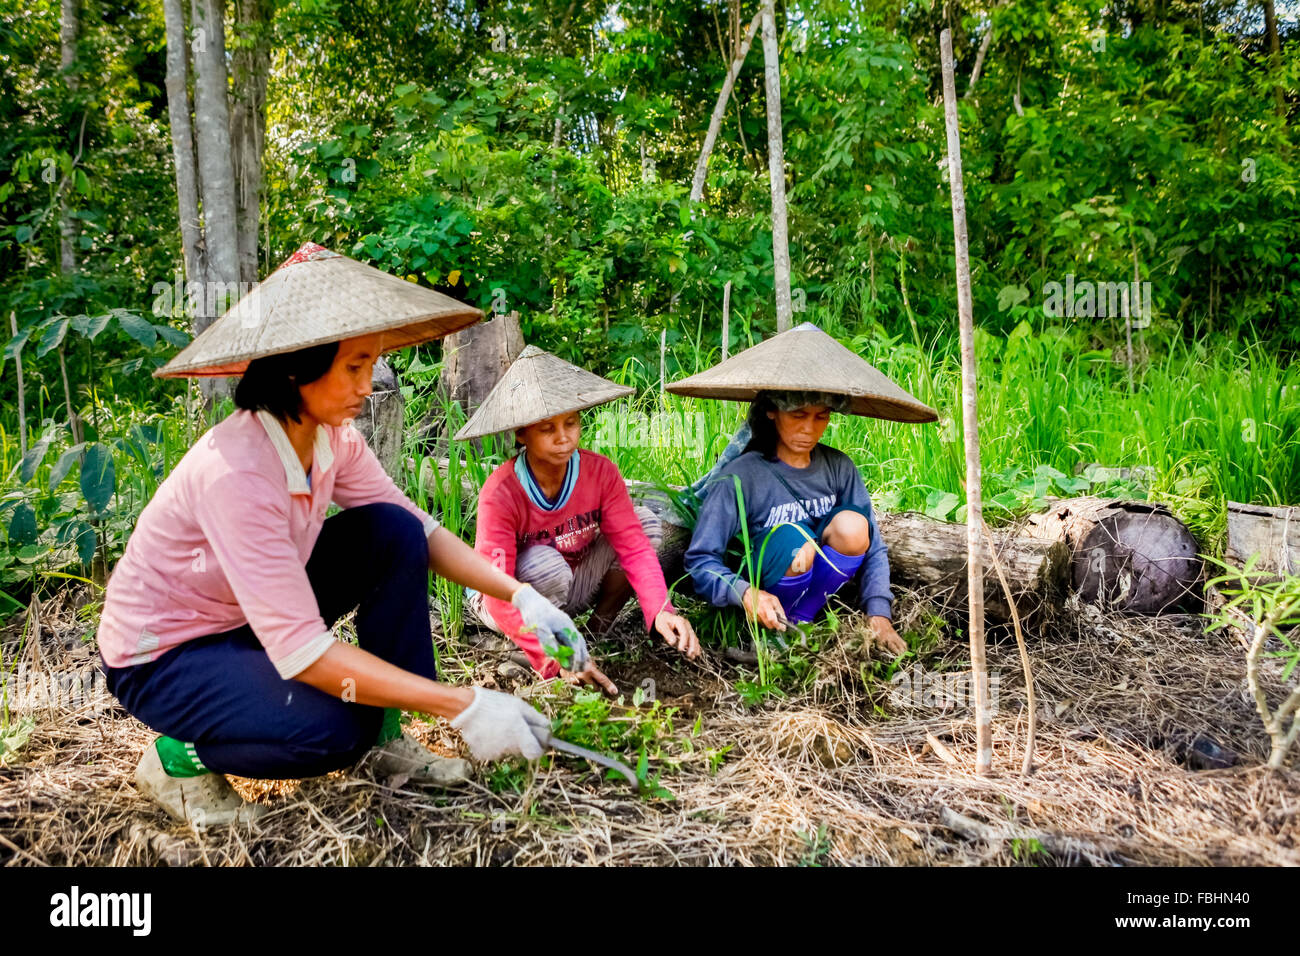 Femmes agricultrices défrichant des terres agricoles dans le village de Sungai Utik, Batu Lintang, Embaloh Hulu, Kapuas Hulu, Kalimantan occidental, Indonésie. Banque D'Images